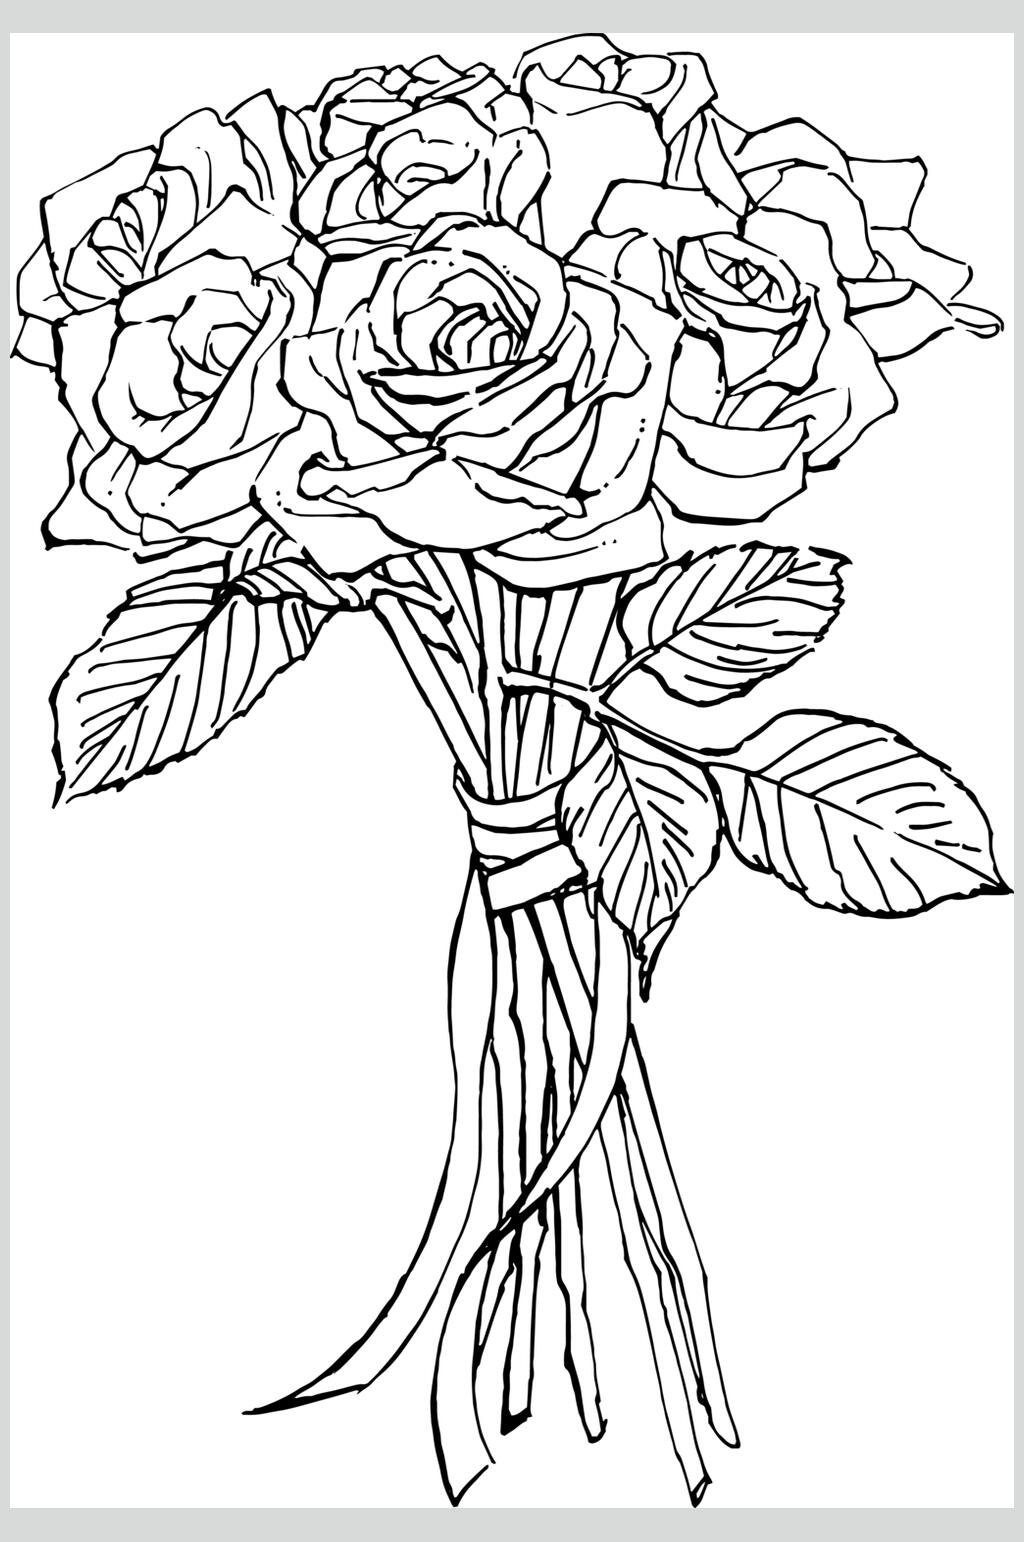 玫瑰花束手绘黑白图片